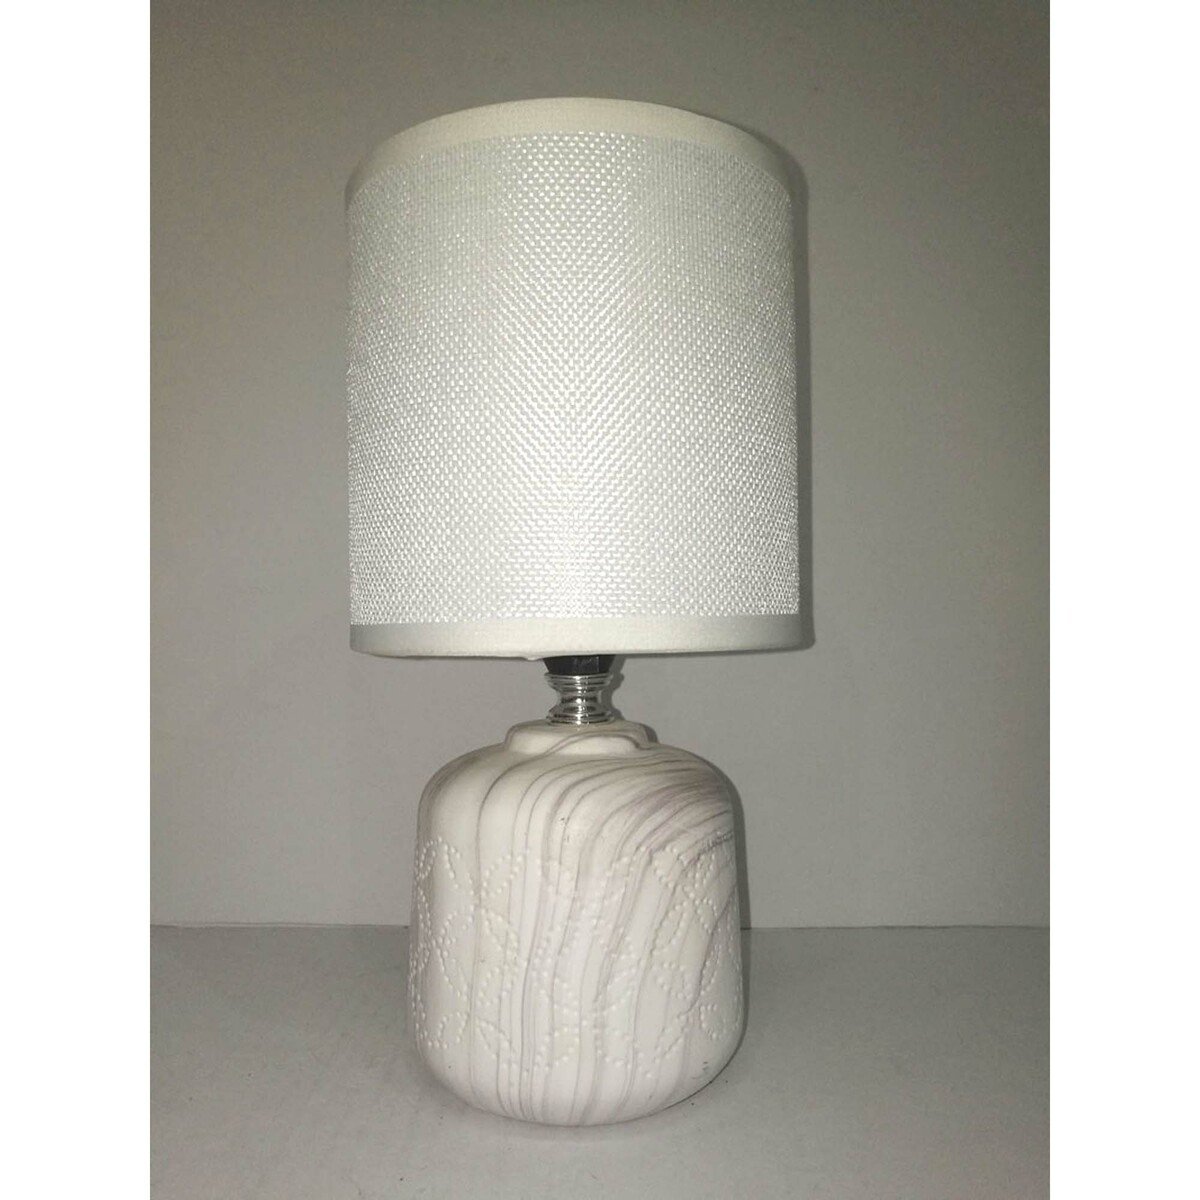 Maple Leaf Ceramic Table Lamp HS8109PRM 13x27cm Assorted